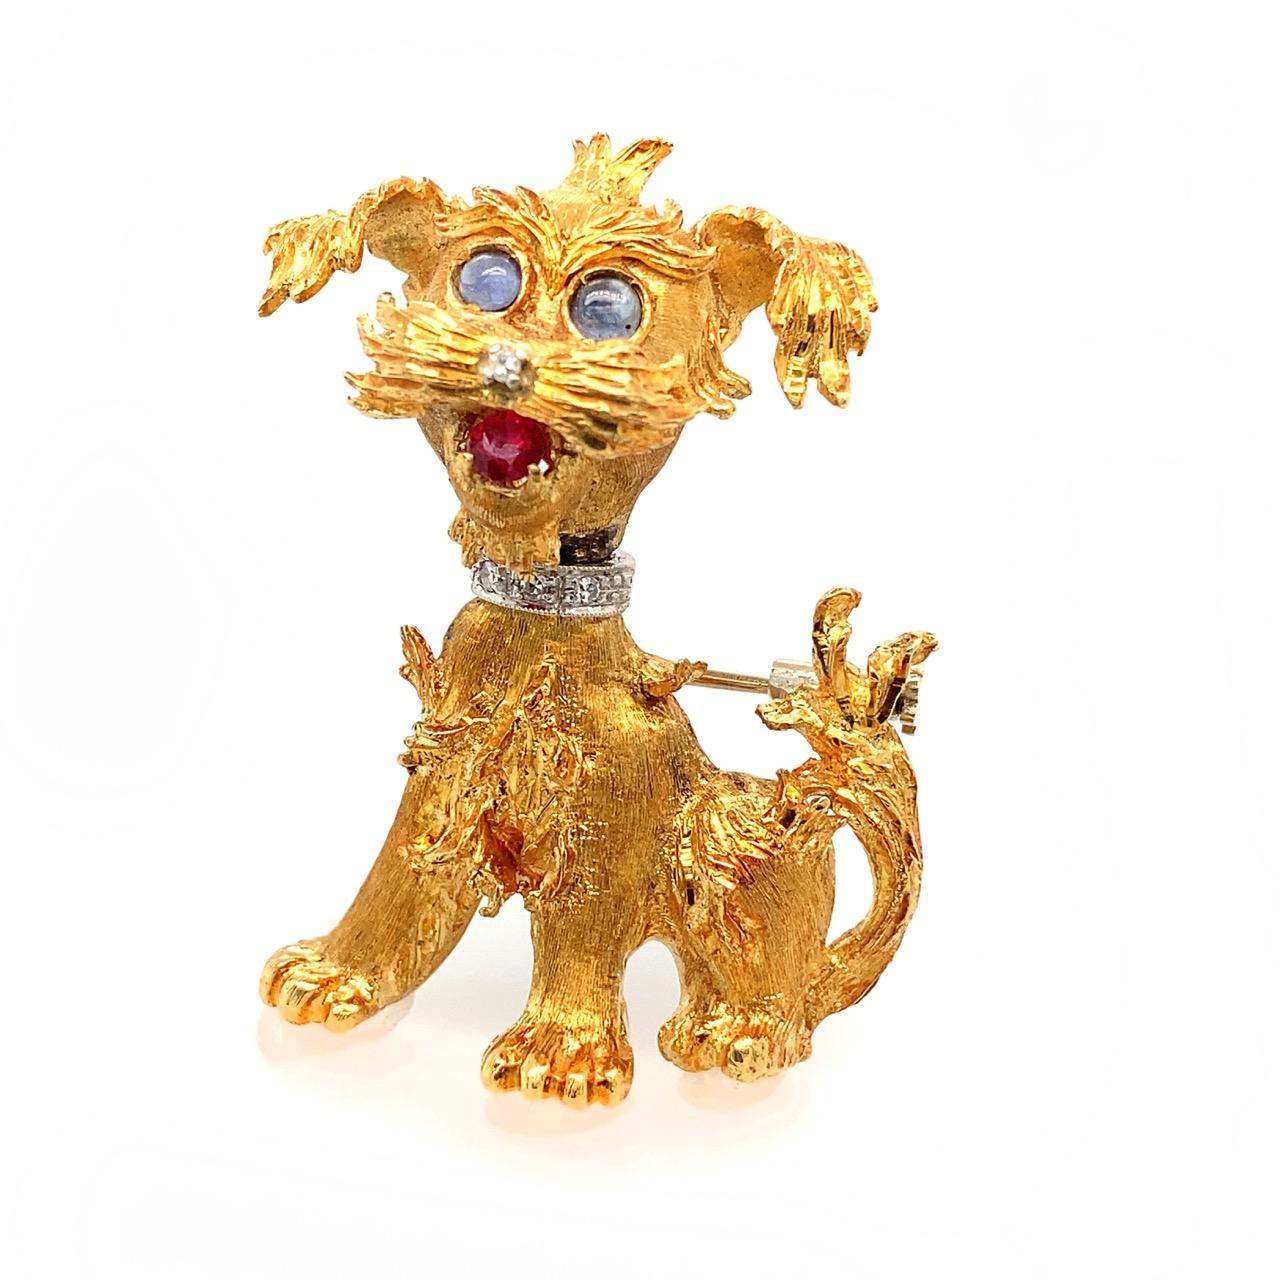 Eine entzückende und fein gearbeitete 18k/14K Goldbrosche eines Schnauzerhundes mit Diamantnase und Halsband, süßen Saphir-Cabochon-Augen und einer Rubinzunge.
Die Brosche und das Halsband sind aus Weißgold.

Der Kopf des Hundes hat einen